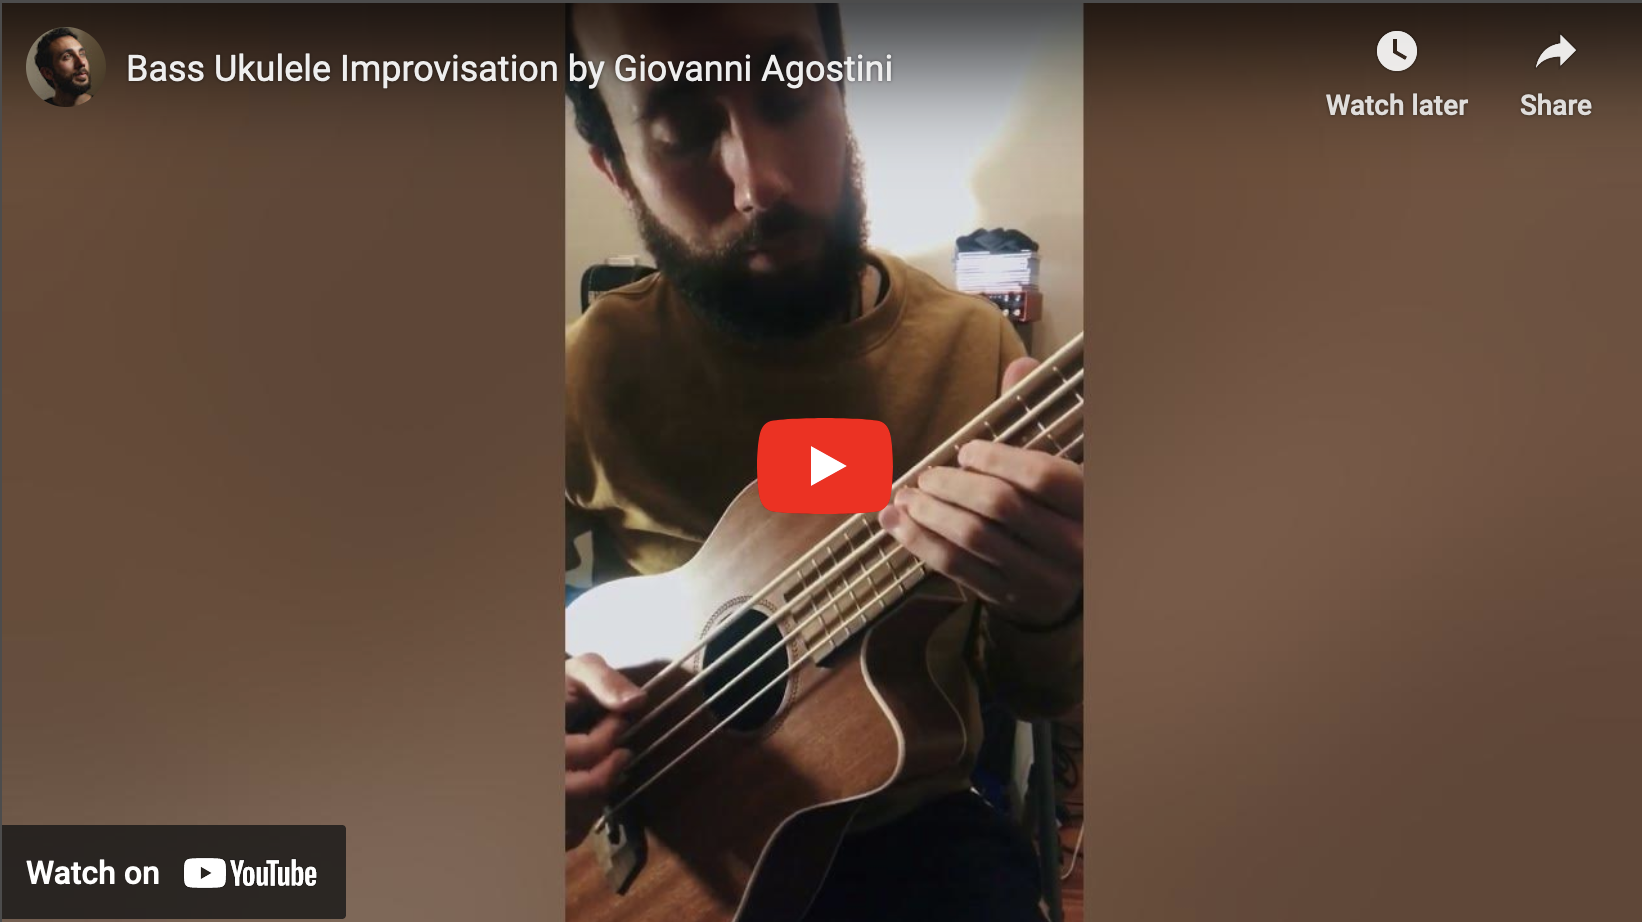 Bass Ukulele Improvisation by Giovanni Agostini